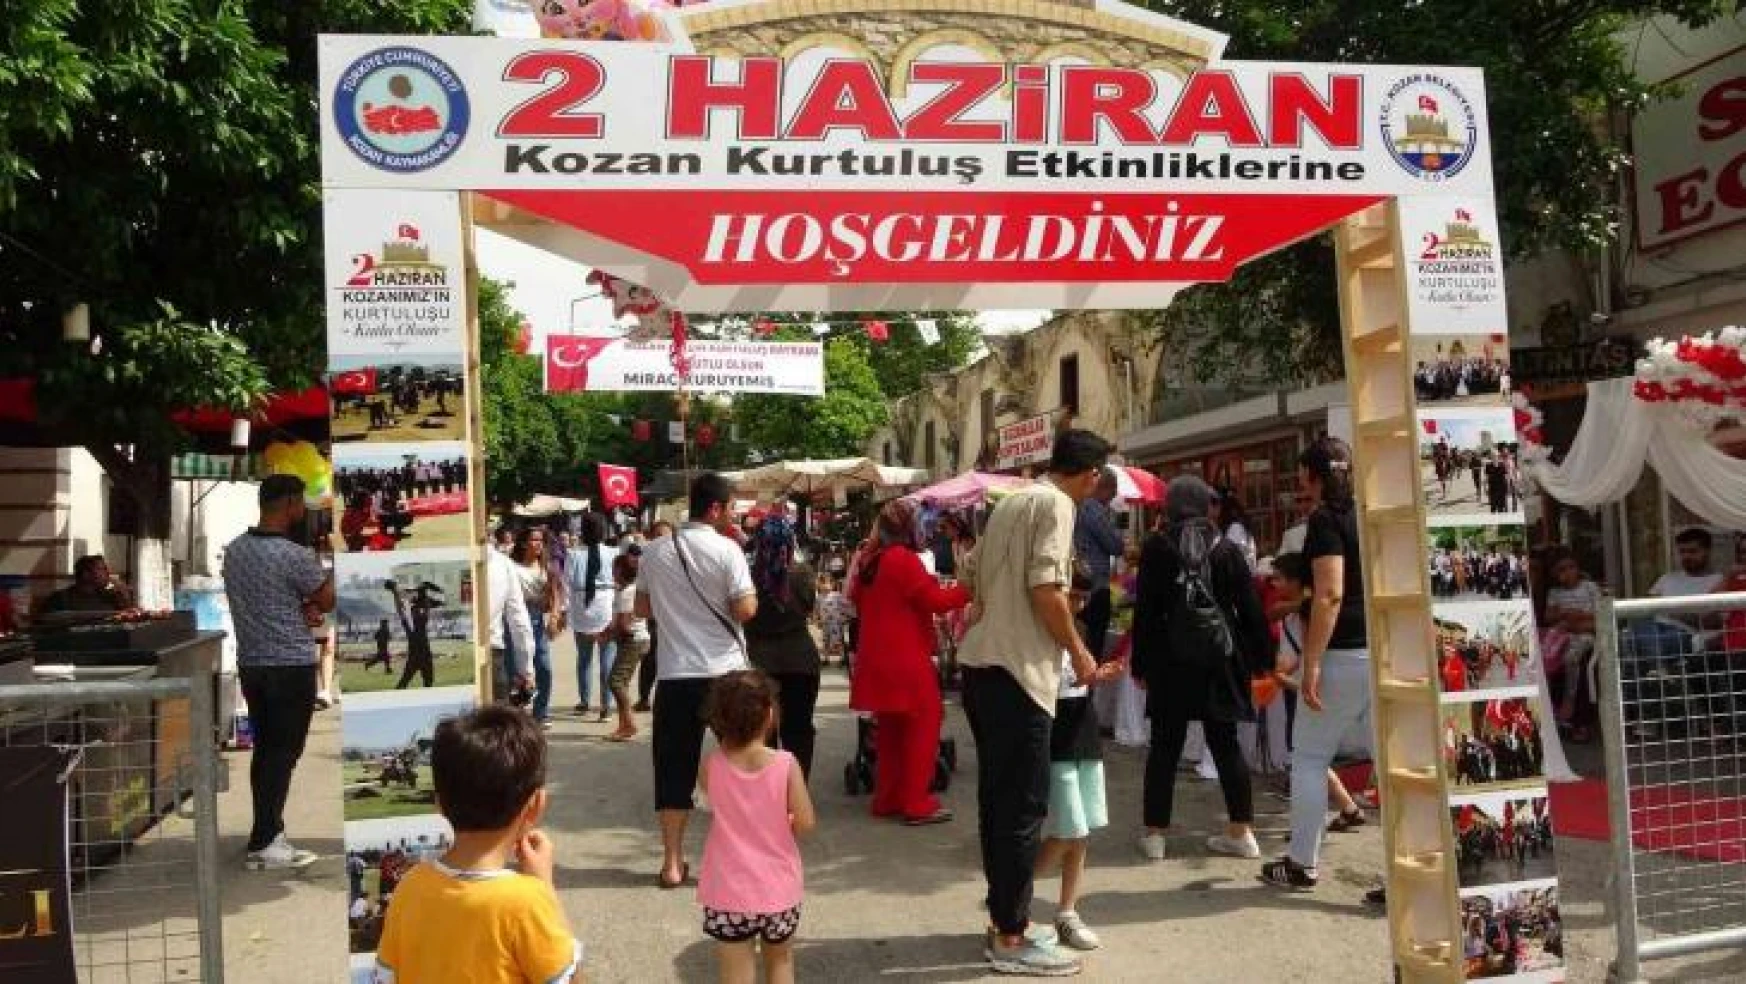 Kozan'da tarihi sokaklar kurtuluş etkinlikleri ile şenlendi